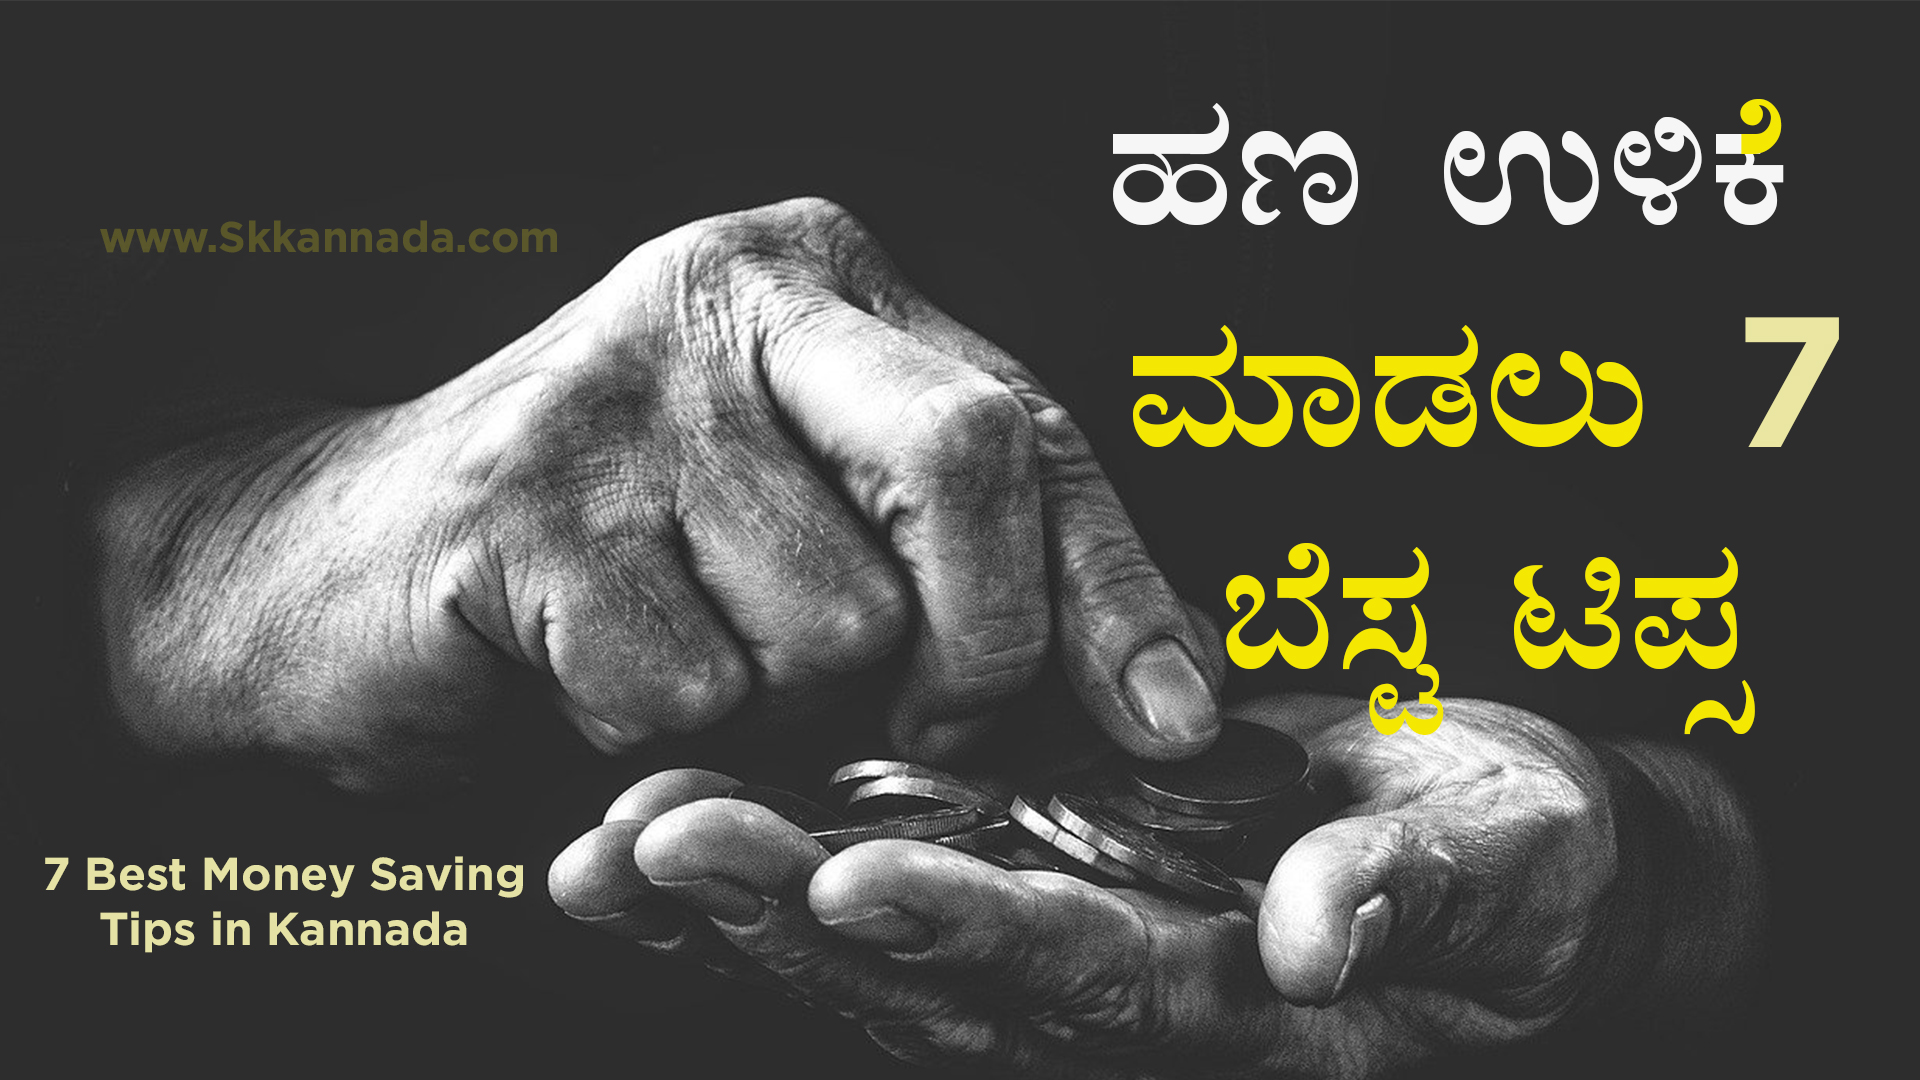 ಹಣ ಉಳಿಕೆ ಮಾಡಲು 7 ಬೆಸ್ಟ ಟಿಪ್ಸ - 7 Best Money Saving Tips in Kannada